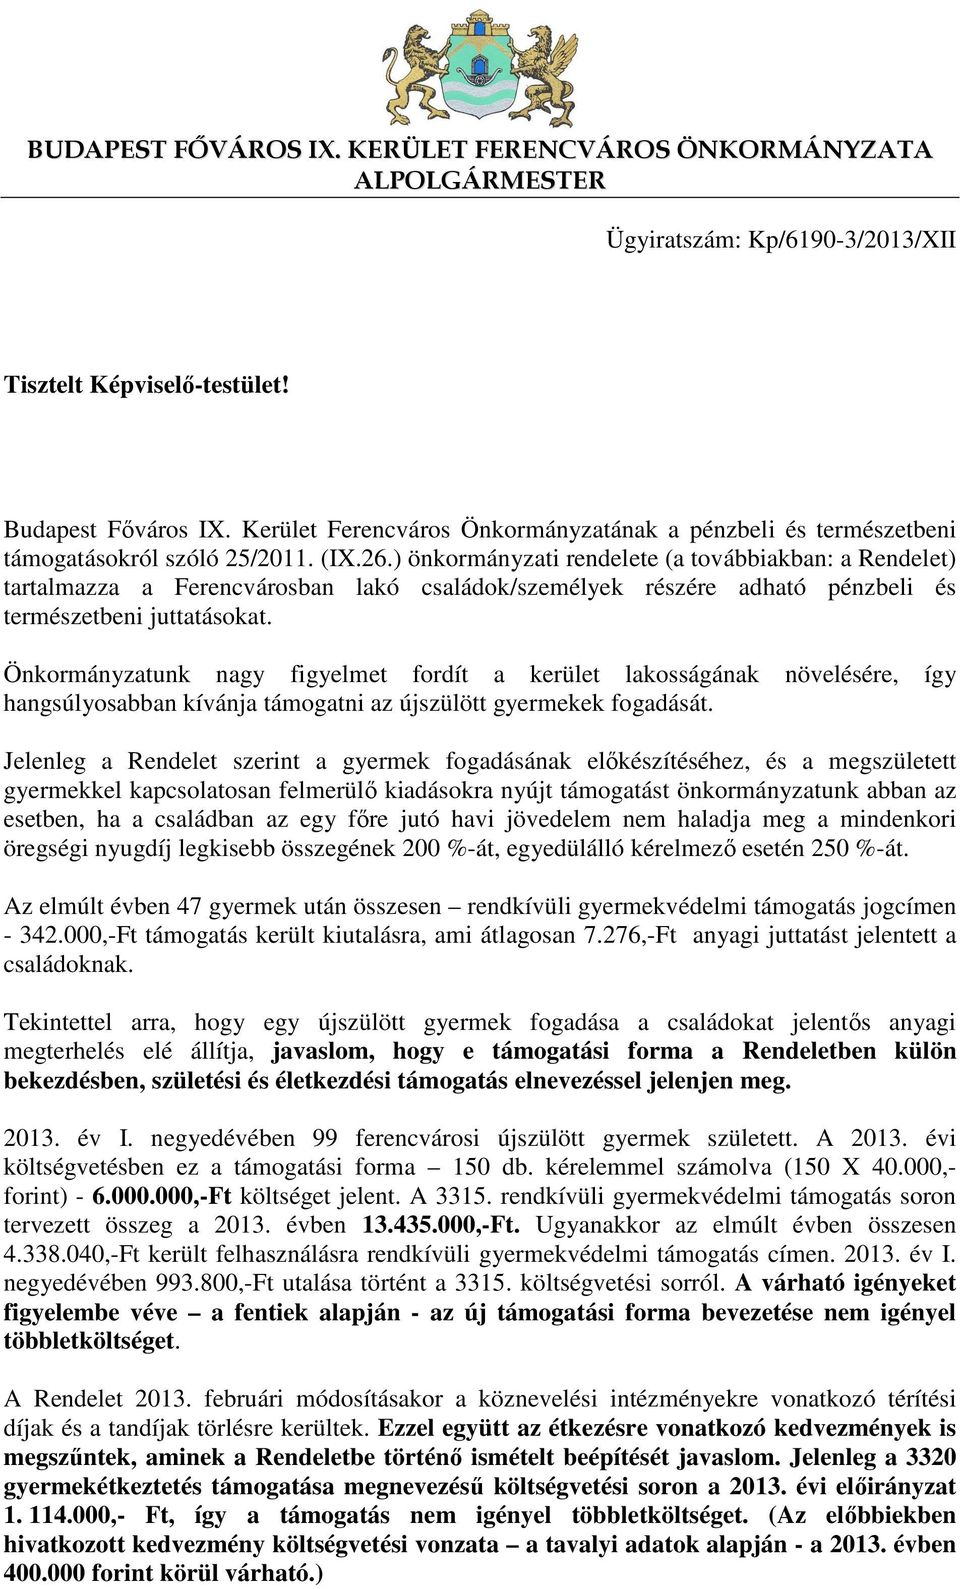 ) önkormányzati rendelete (a továbbiakban: a Rendelet) tartalmazza a Ferencvárosban lakó családok/személyek részére adható pénzbeli és természetbeni juttatásokat.